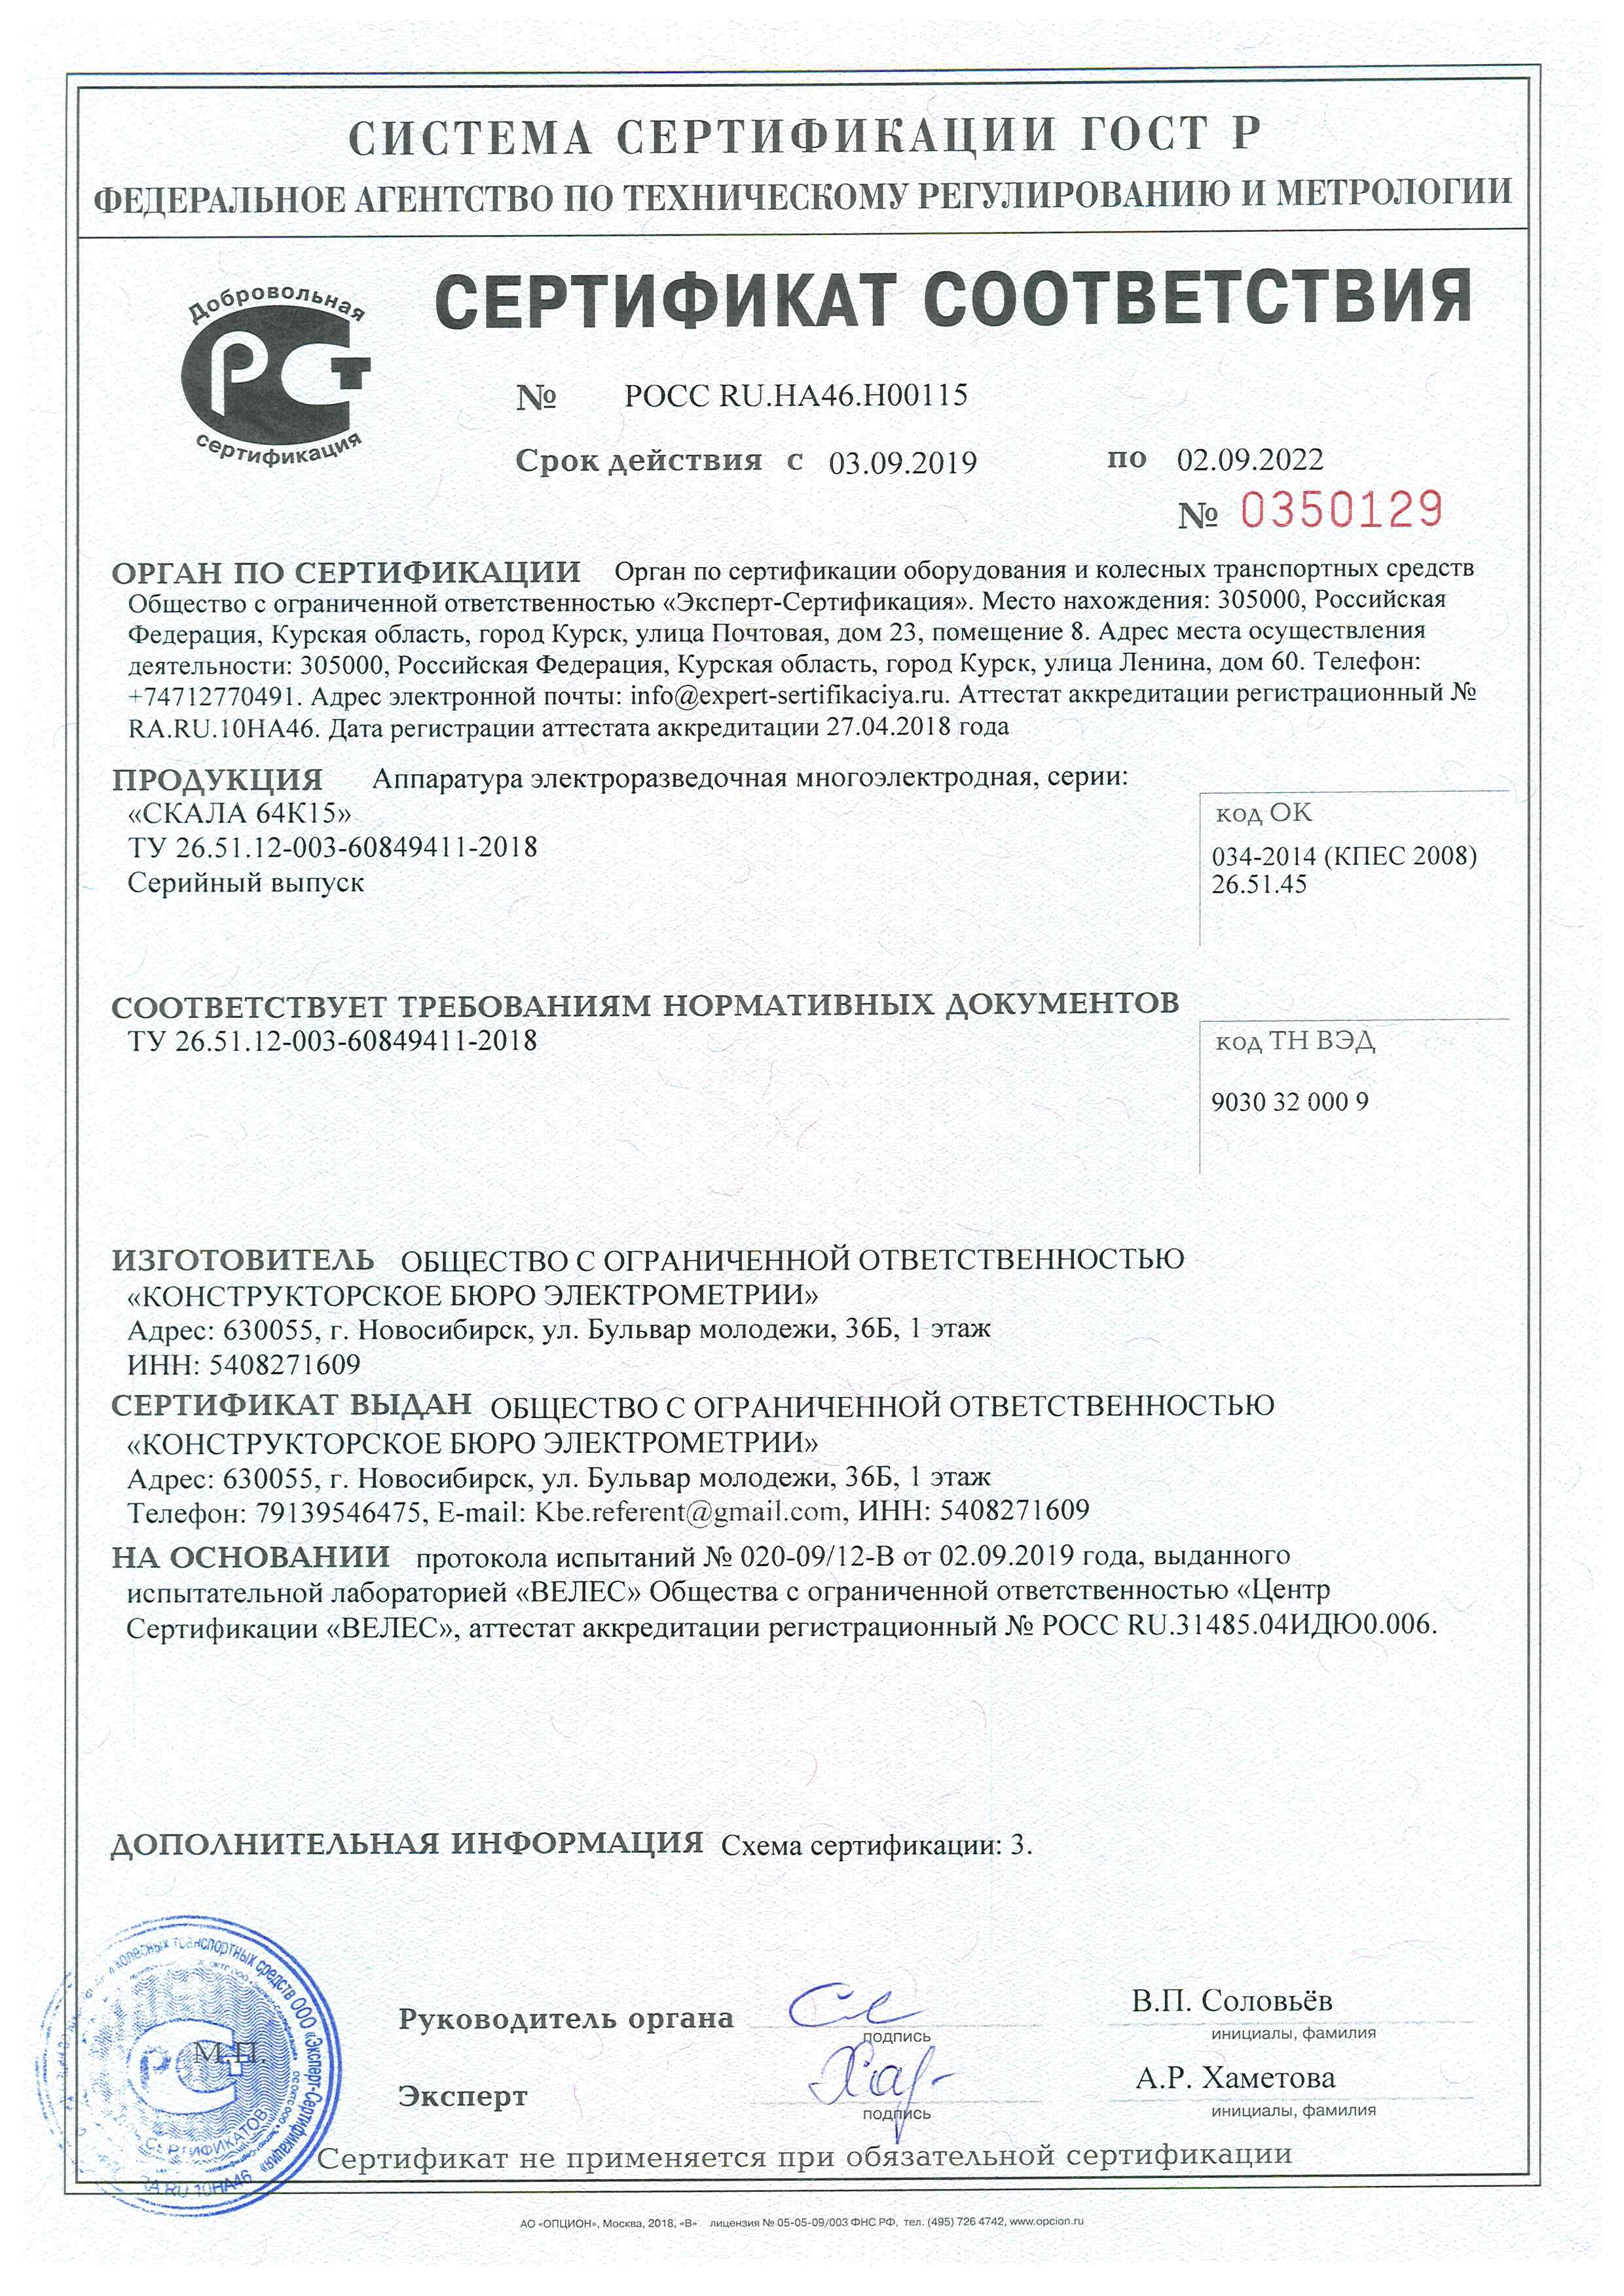 Certificate of SibER64K15